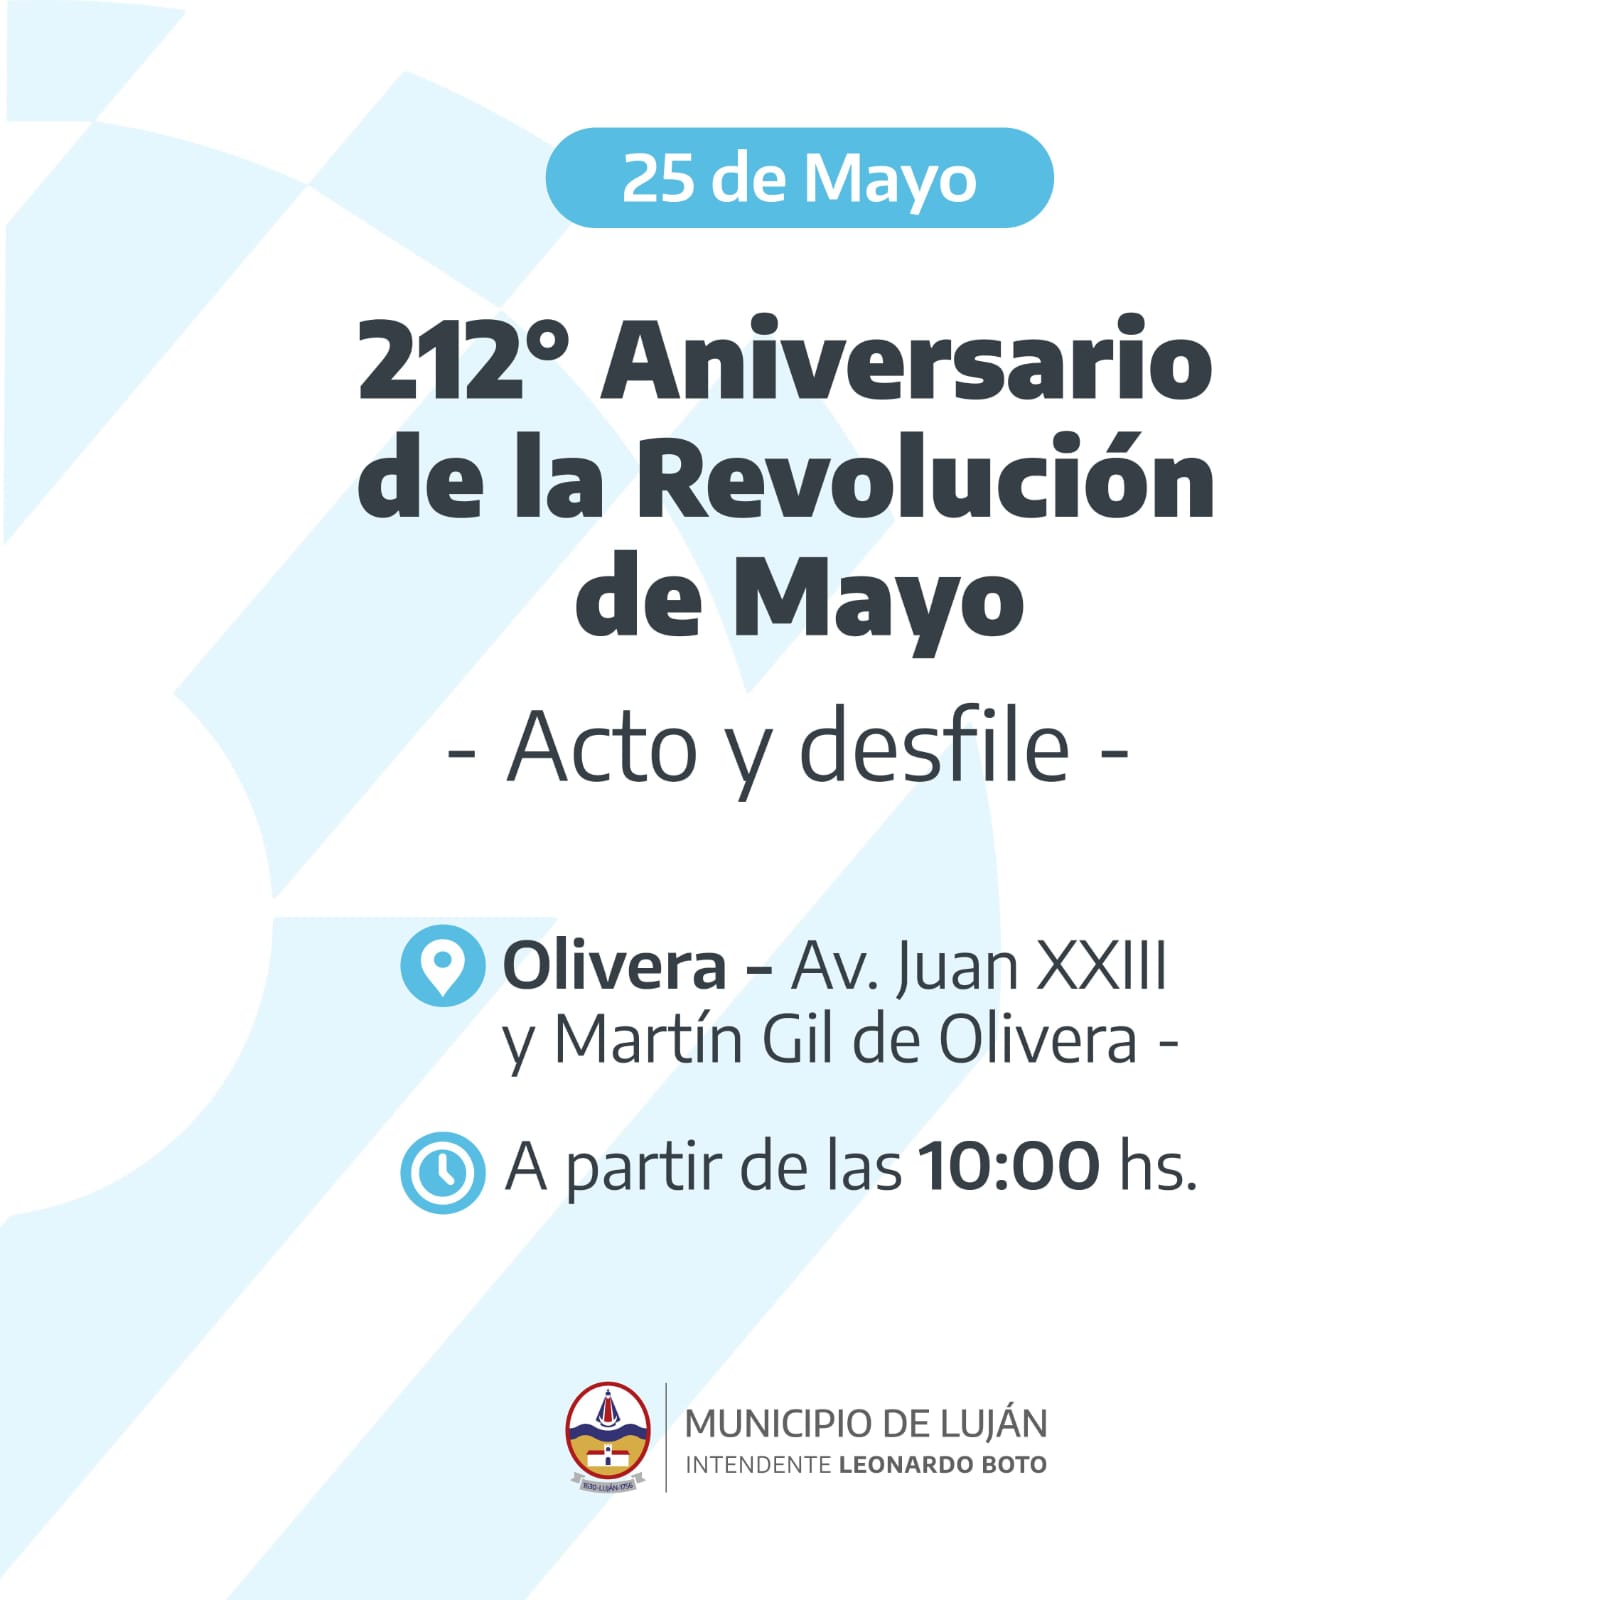 El Municipio invita a participar del acto oficial por el 25 de Mayo en la localidad de Olivera